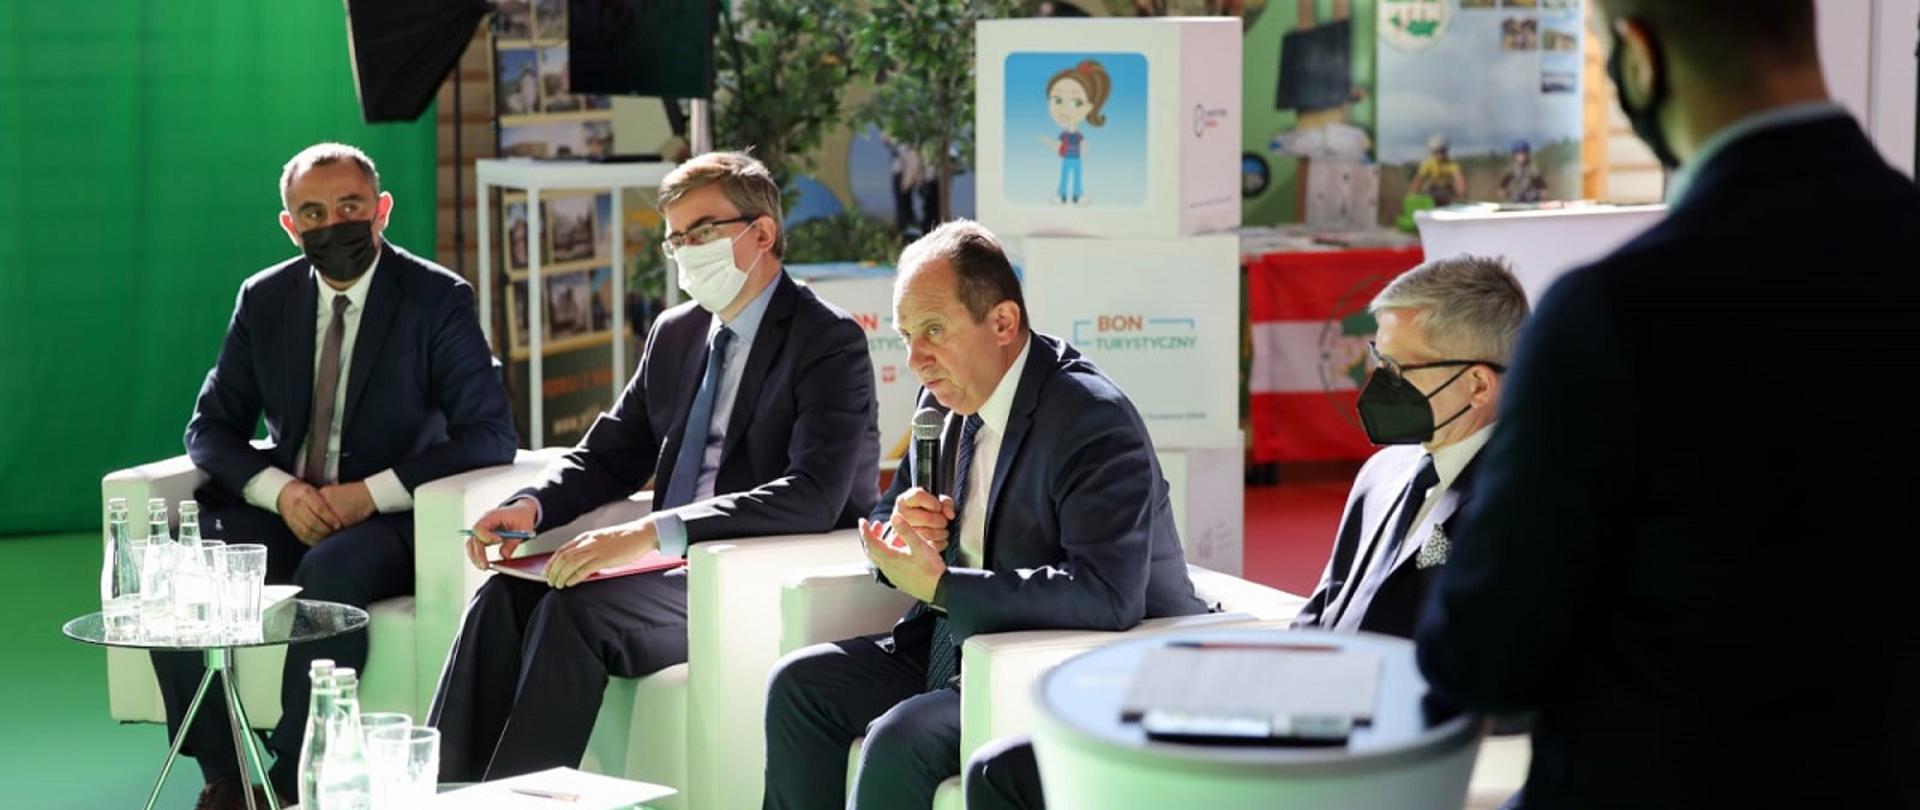 Wiceminister rozwoju i turystyki Andrzej Gut-Mostowy przemawiający podczas konferencji "Kadry dla turystyki", obok siedzą paneliści konferencji, pierwszy z lewej Rafał Szlachta